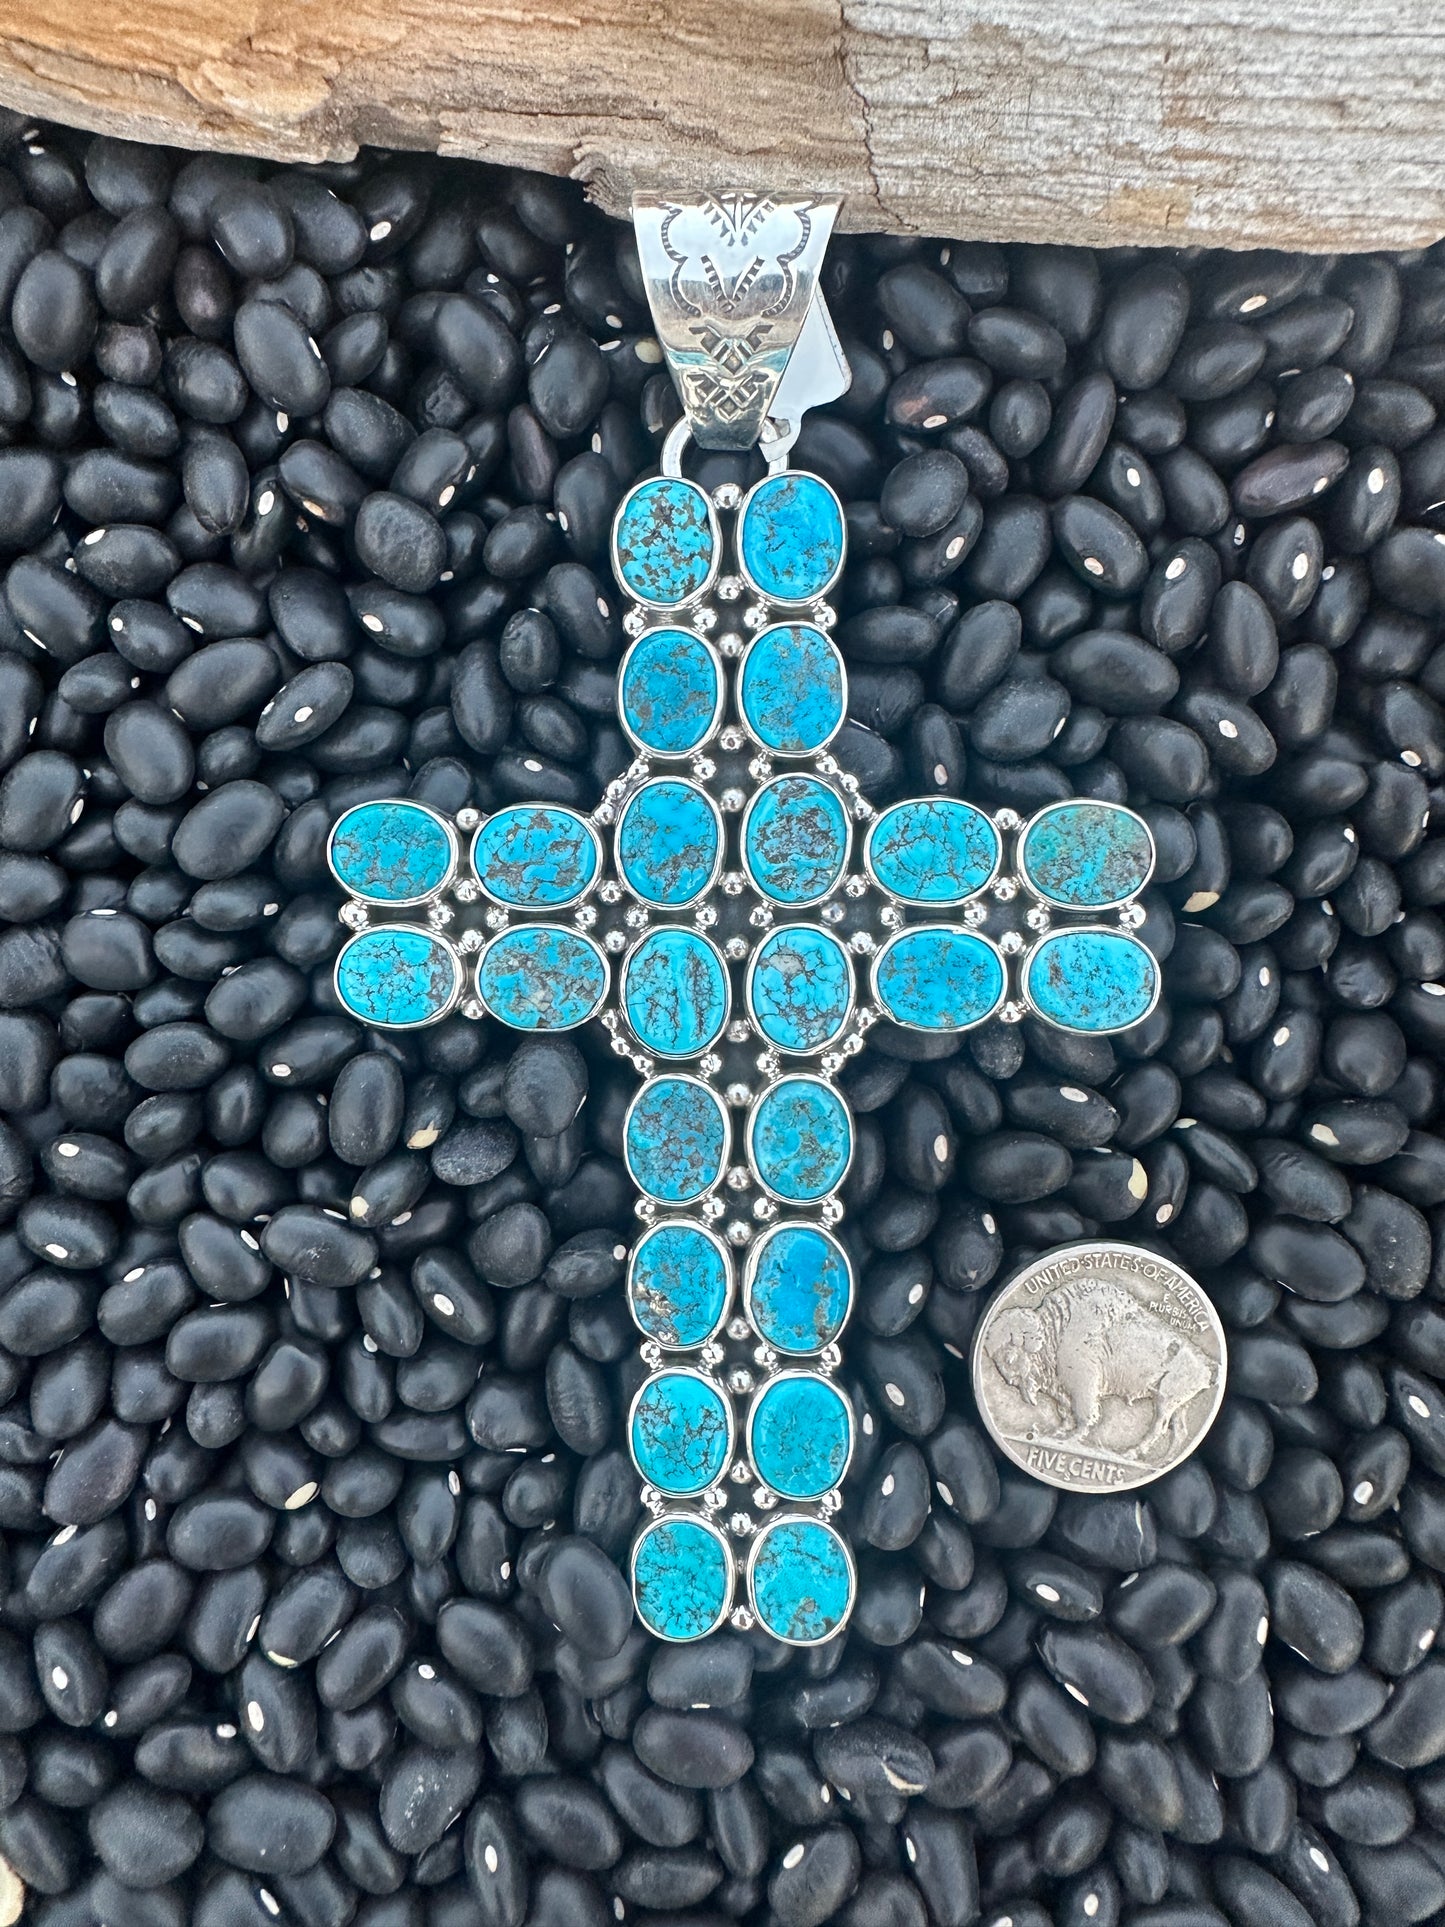 The Mary Cross